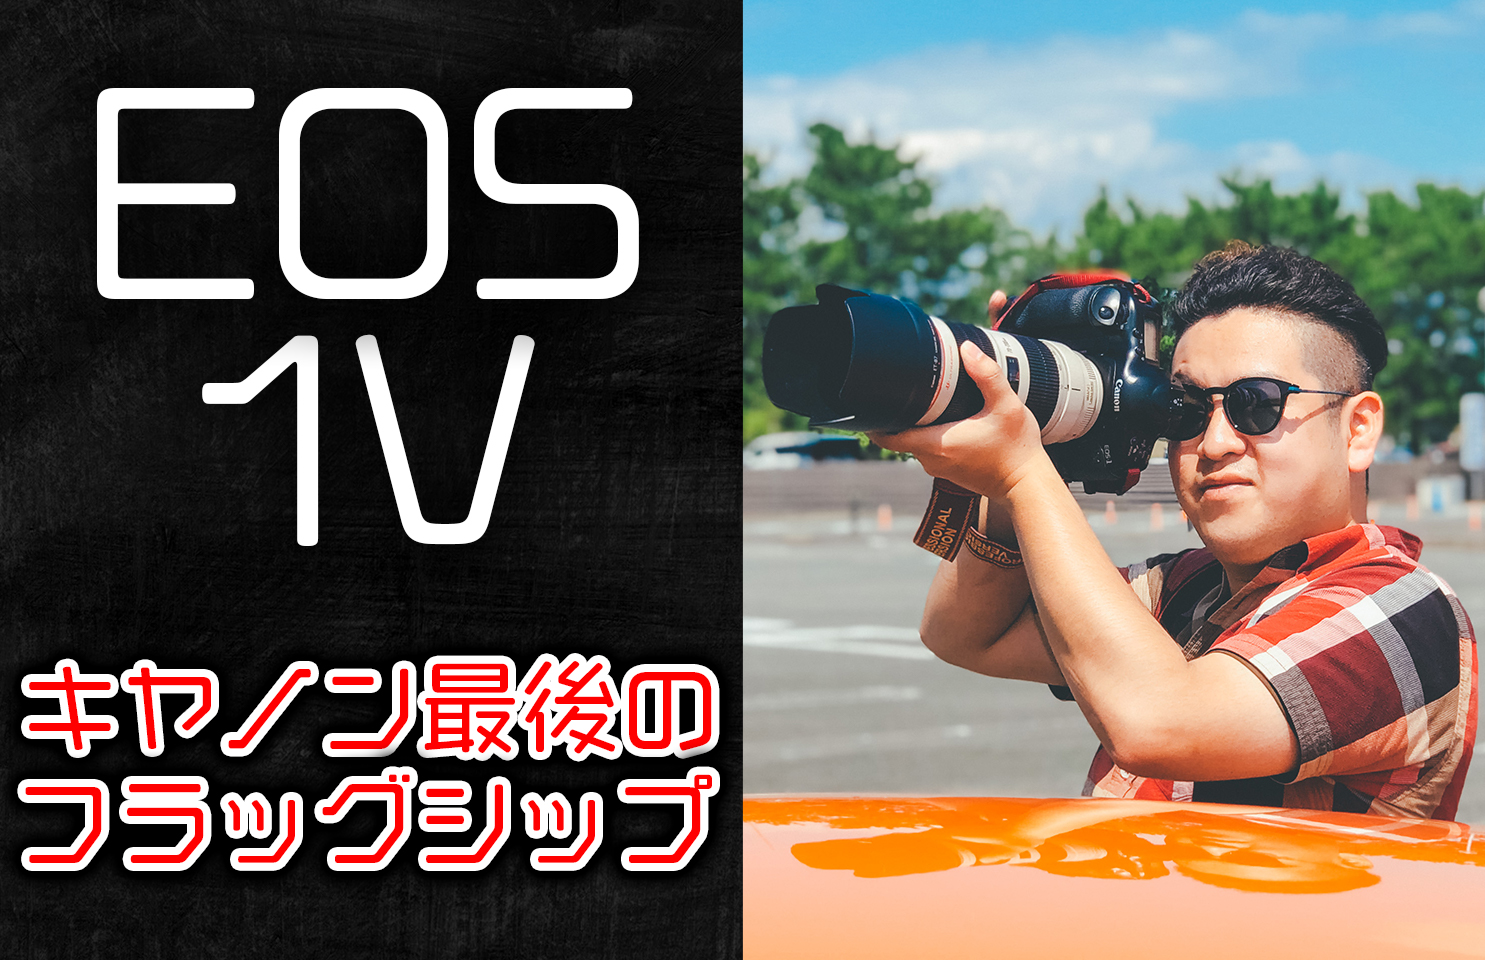 EOS-1V フィルムカメラ